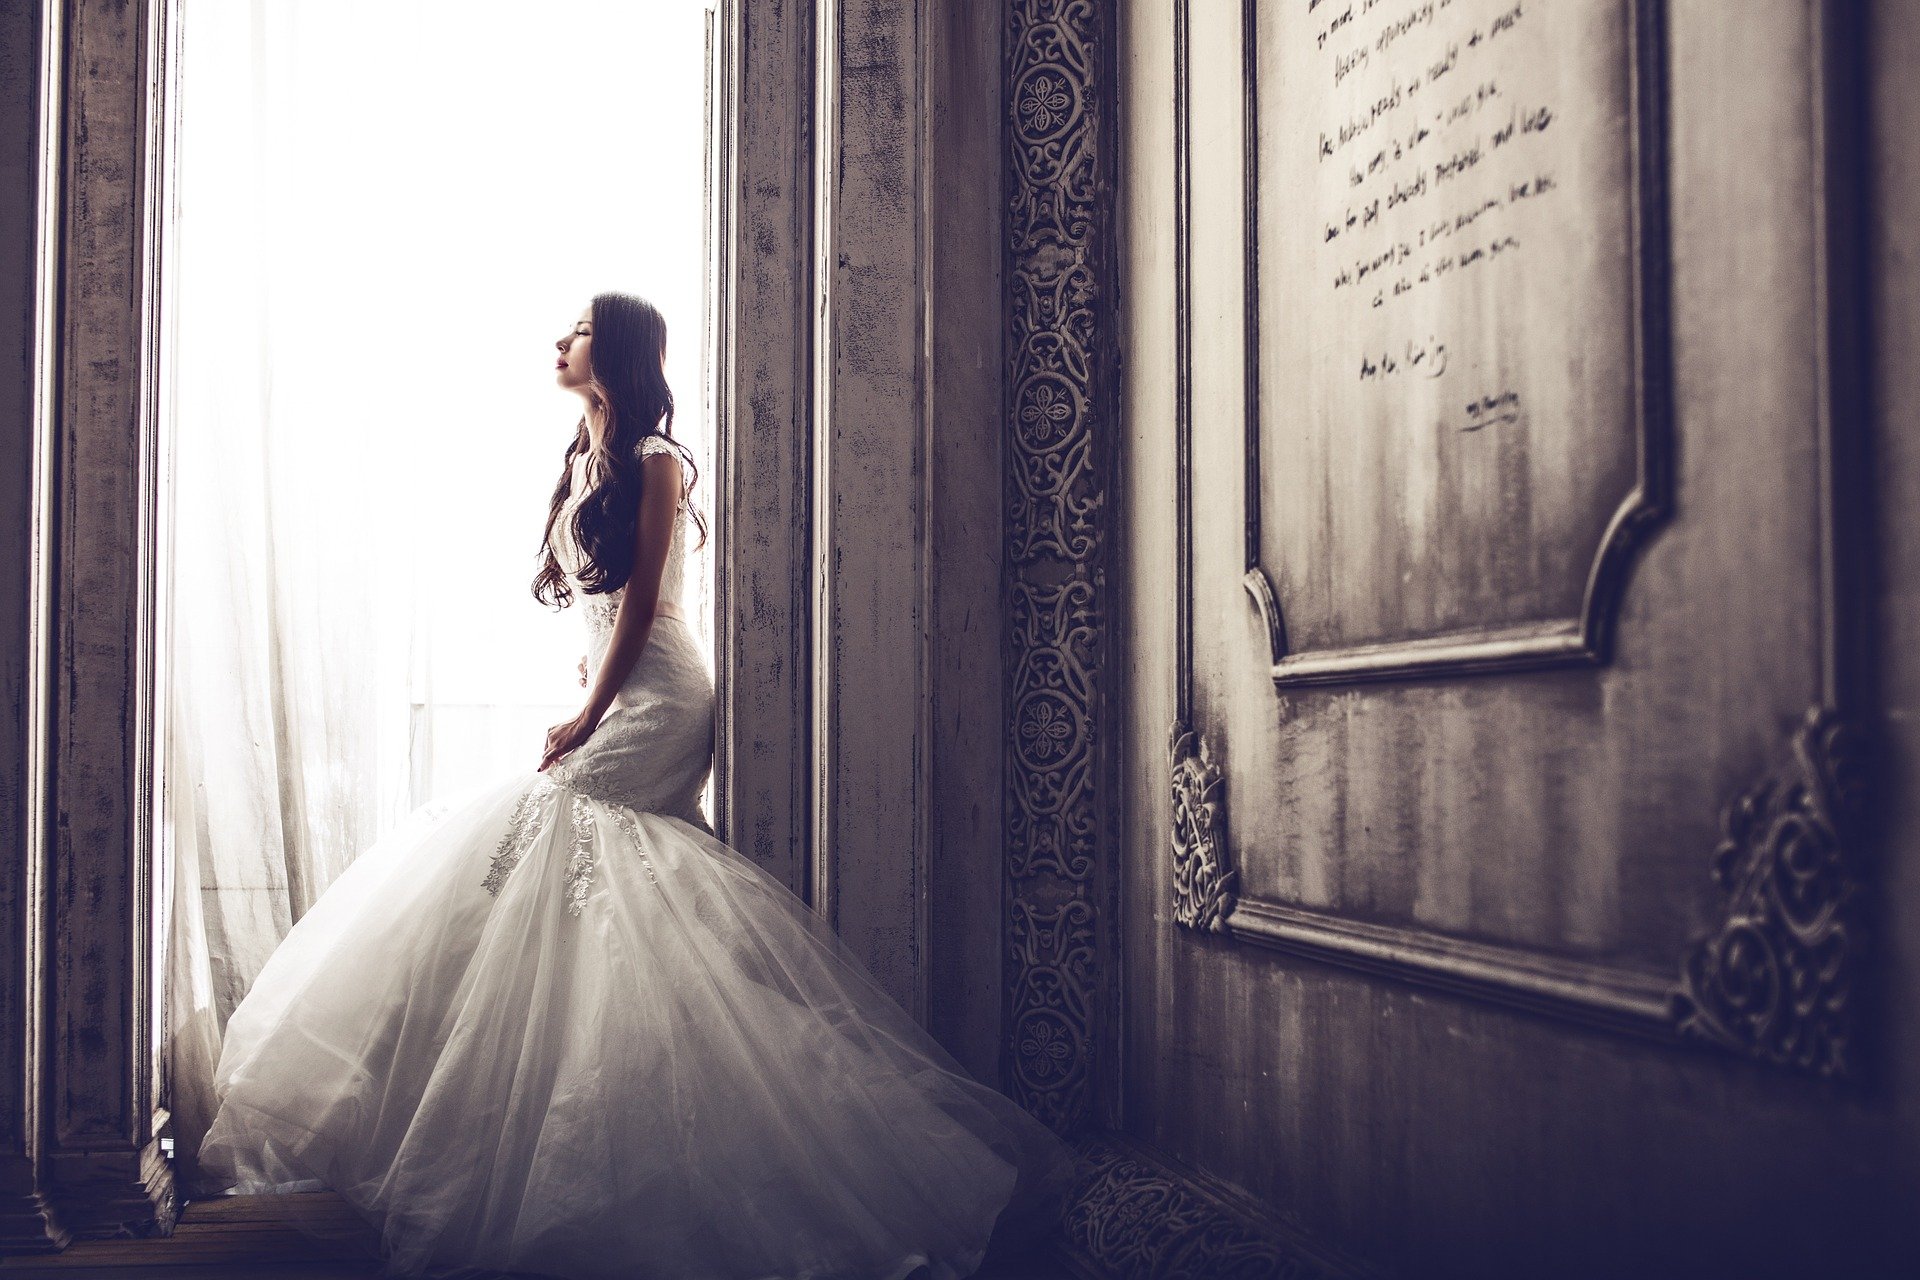 Mujer vestida de novia. Fuente: Pixabay